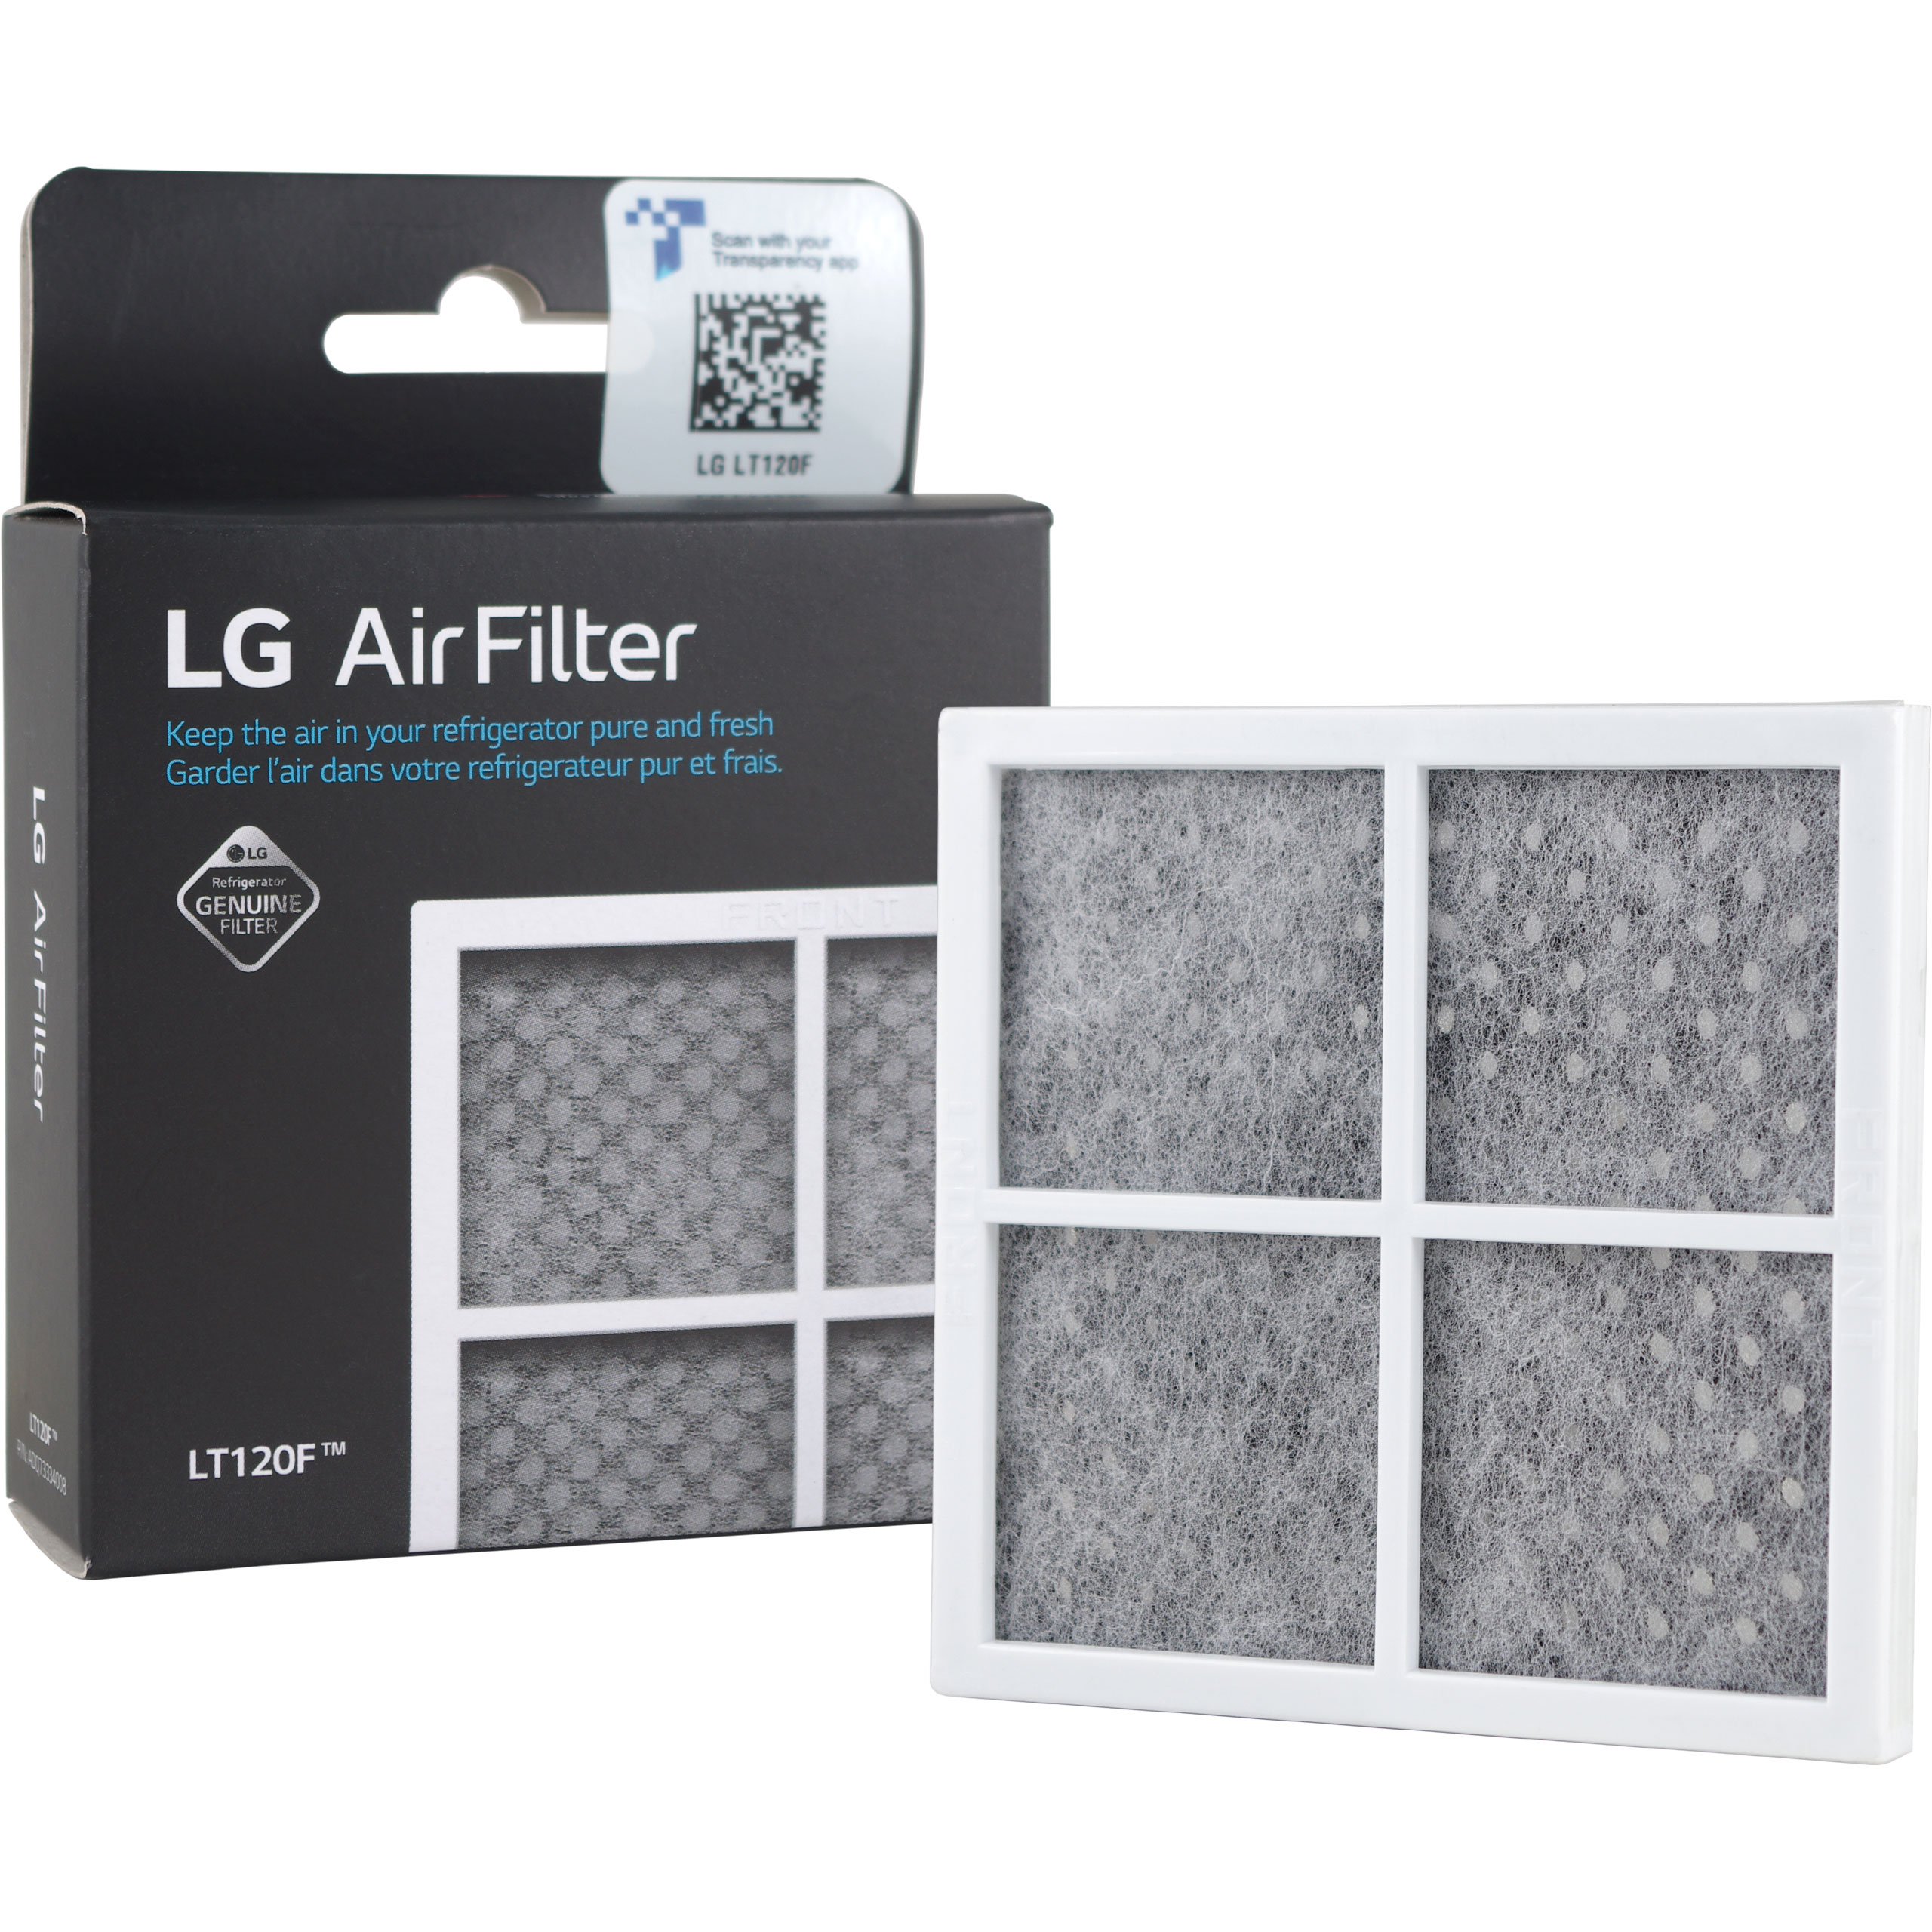 LG AIR FILTER 2X LG COMPATIBLE EXTERNAL FRIDGE WATER FILTER + LT120F 2X